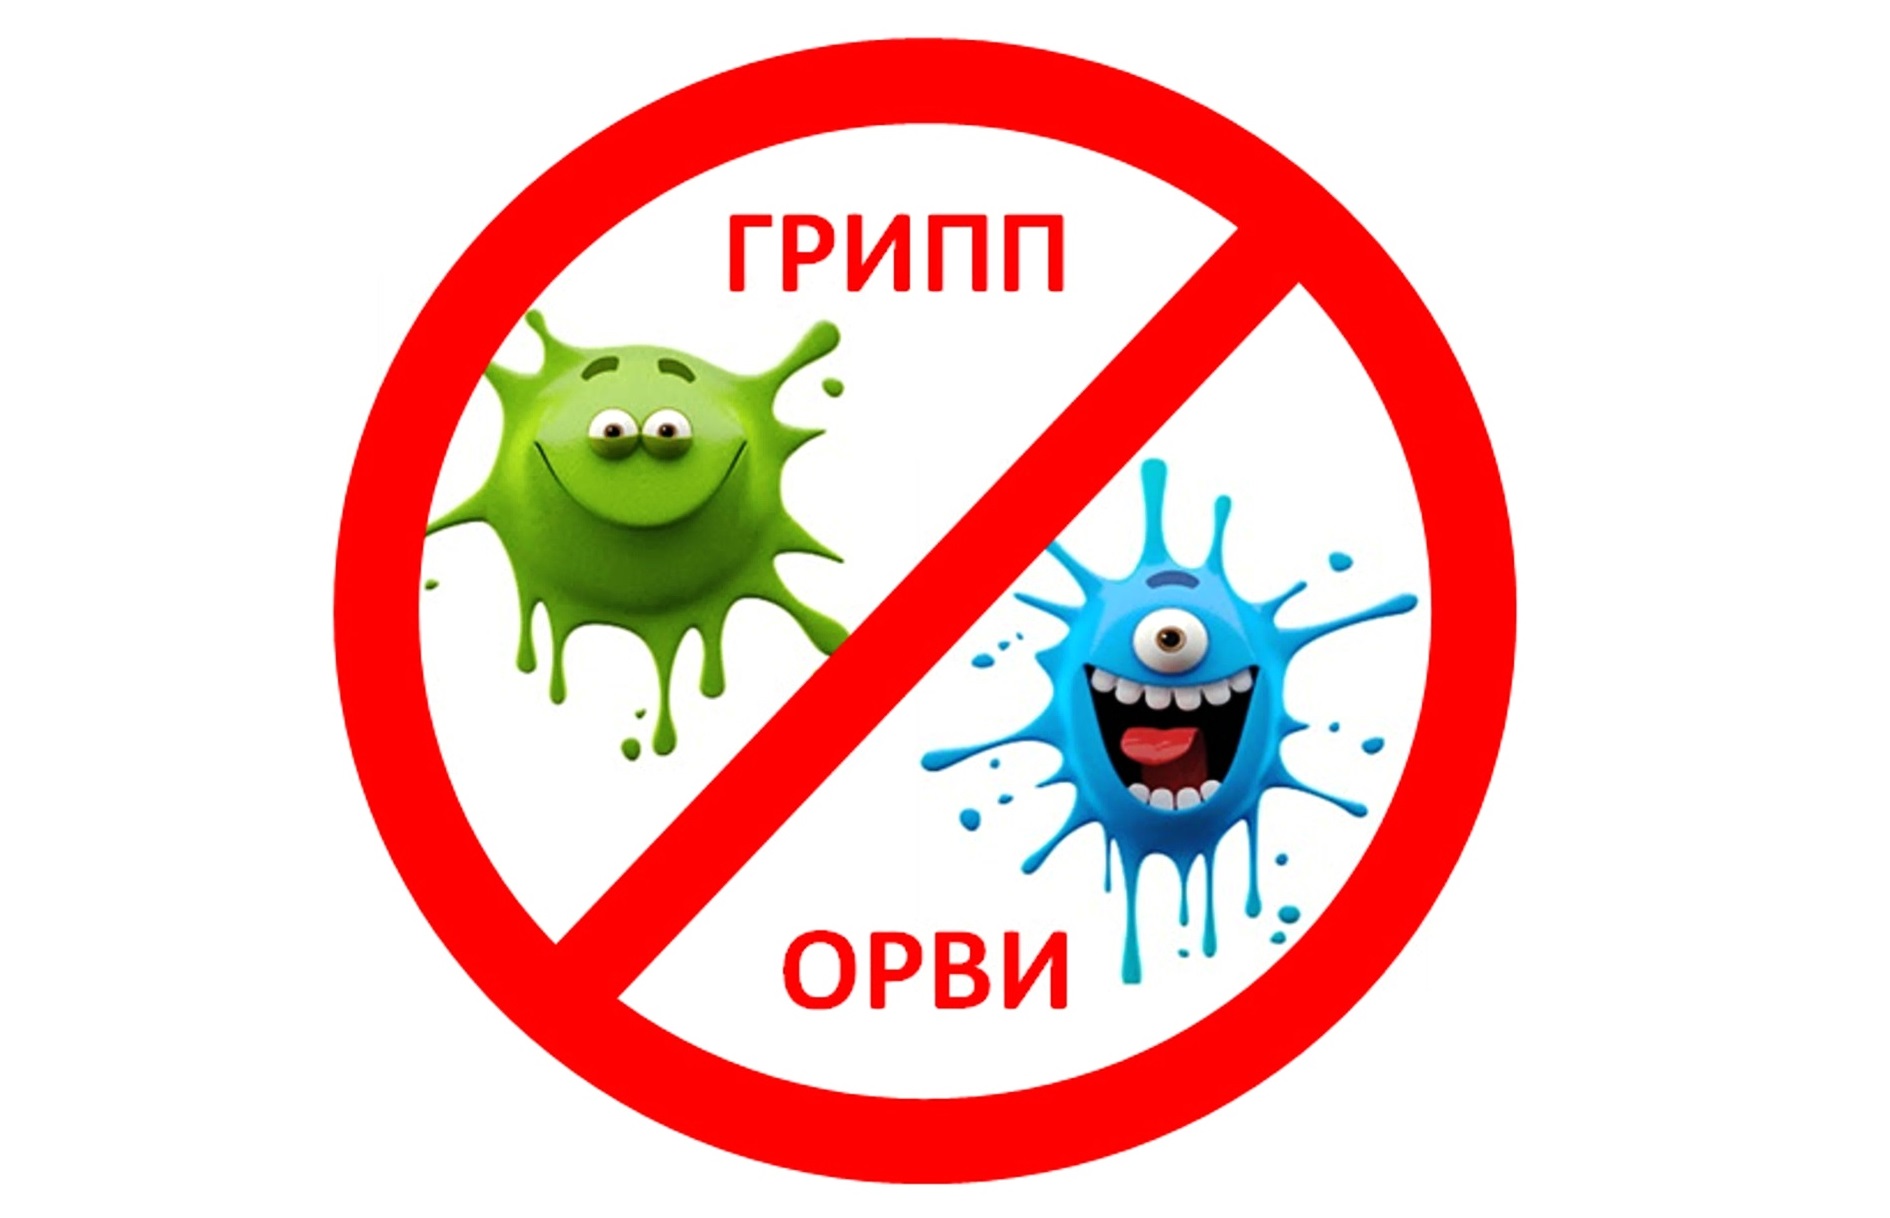 Защита гриппа. Профилактика гриппа. Профилактика гриппа и ОРВИ. Профилактика вируса гриппа. Стоп грипп.